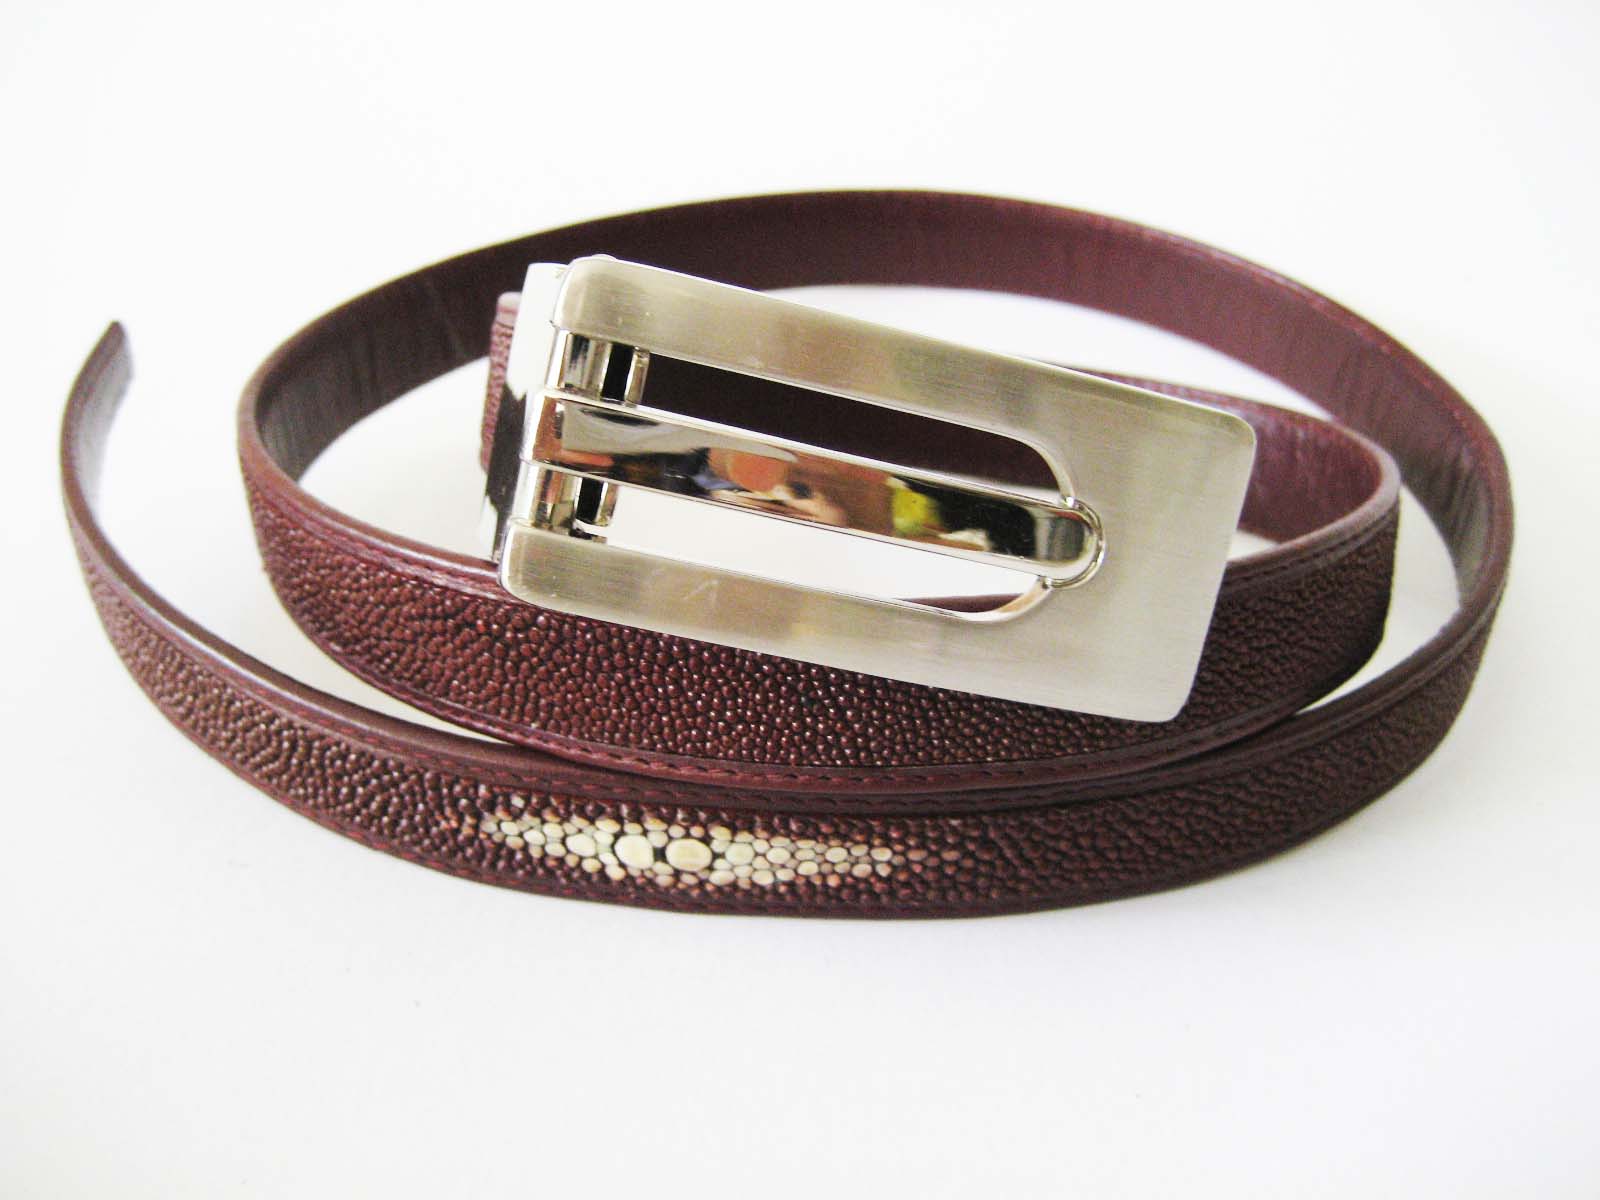 Ladies Stingray Leather Belt in Burgundy Stingray Skin  #STM648B-03